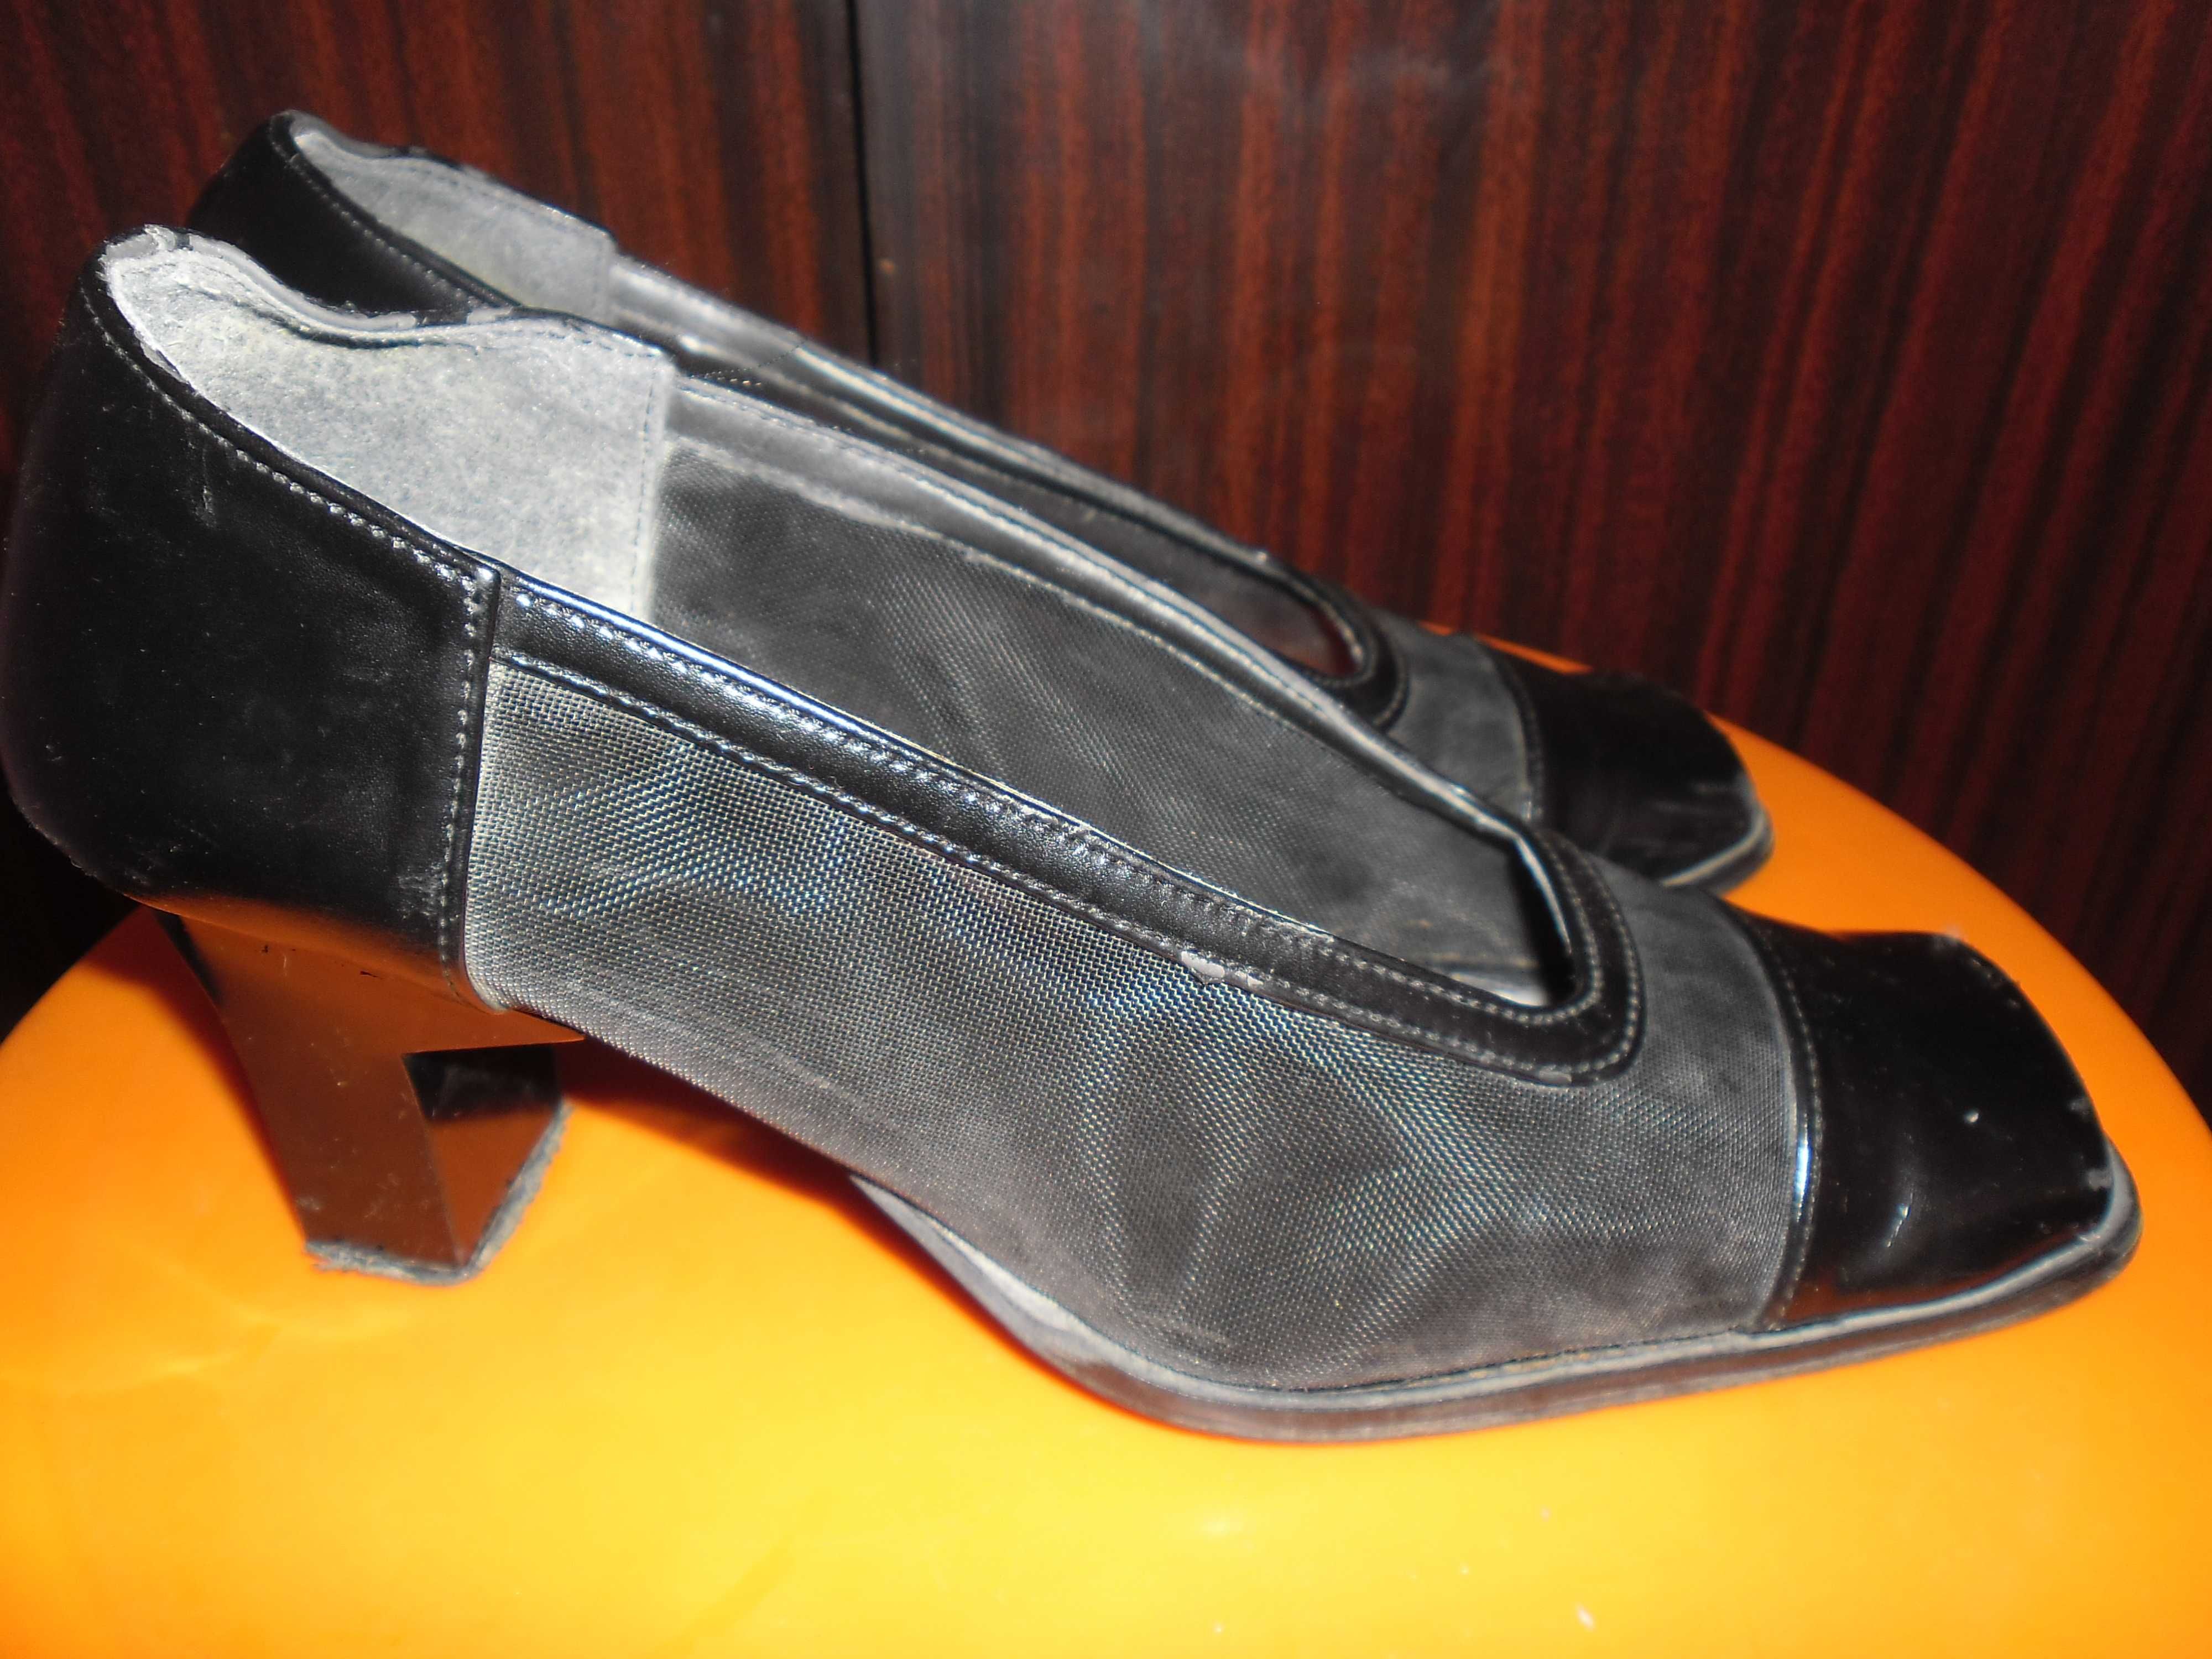 елегантни дамски черни обувки